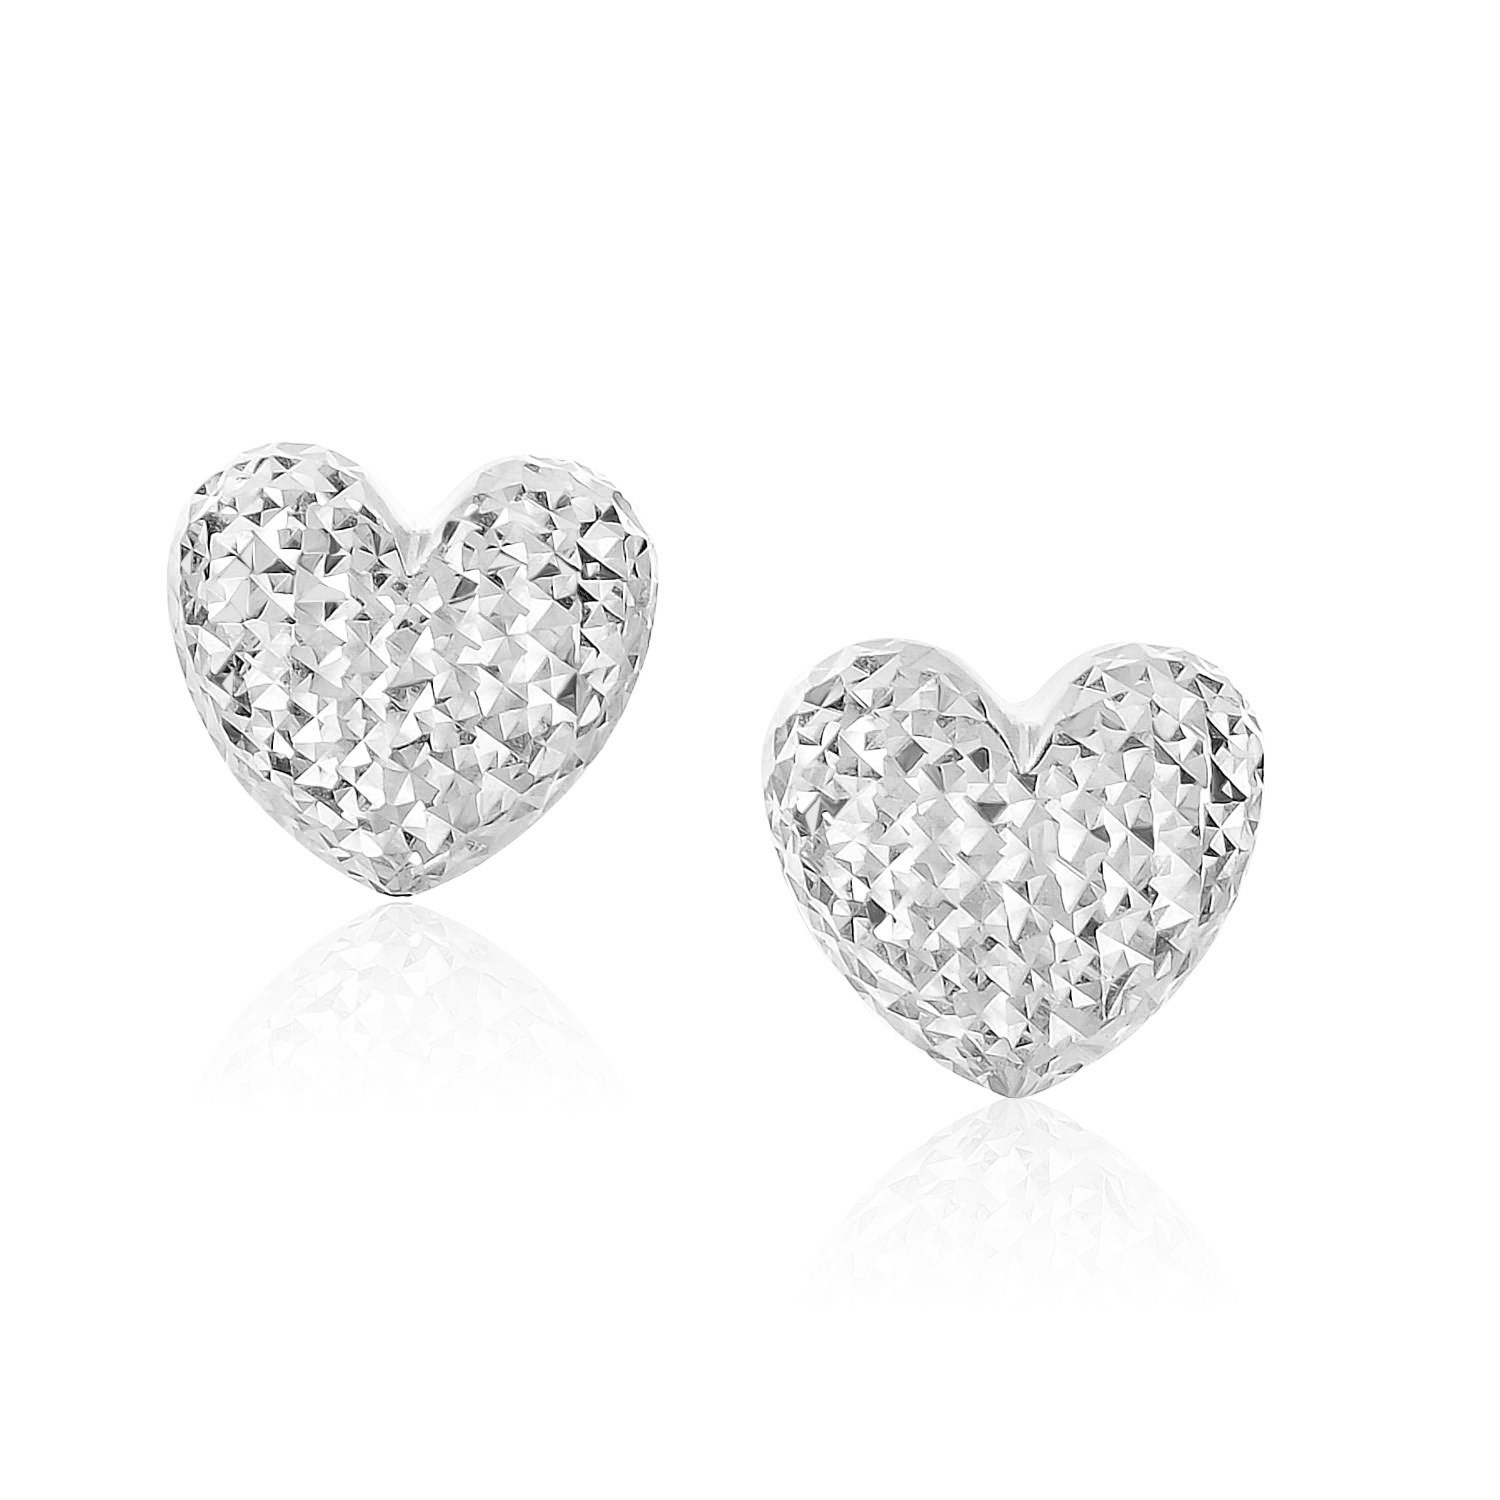 Diamond Cut Puffed Heart Earrings in 14k White Gold - Richard Cannon ...